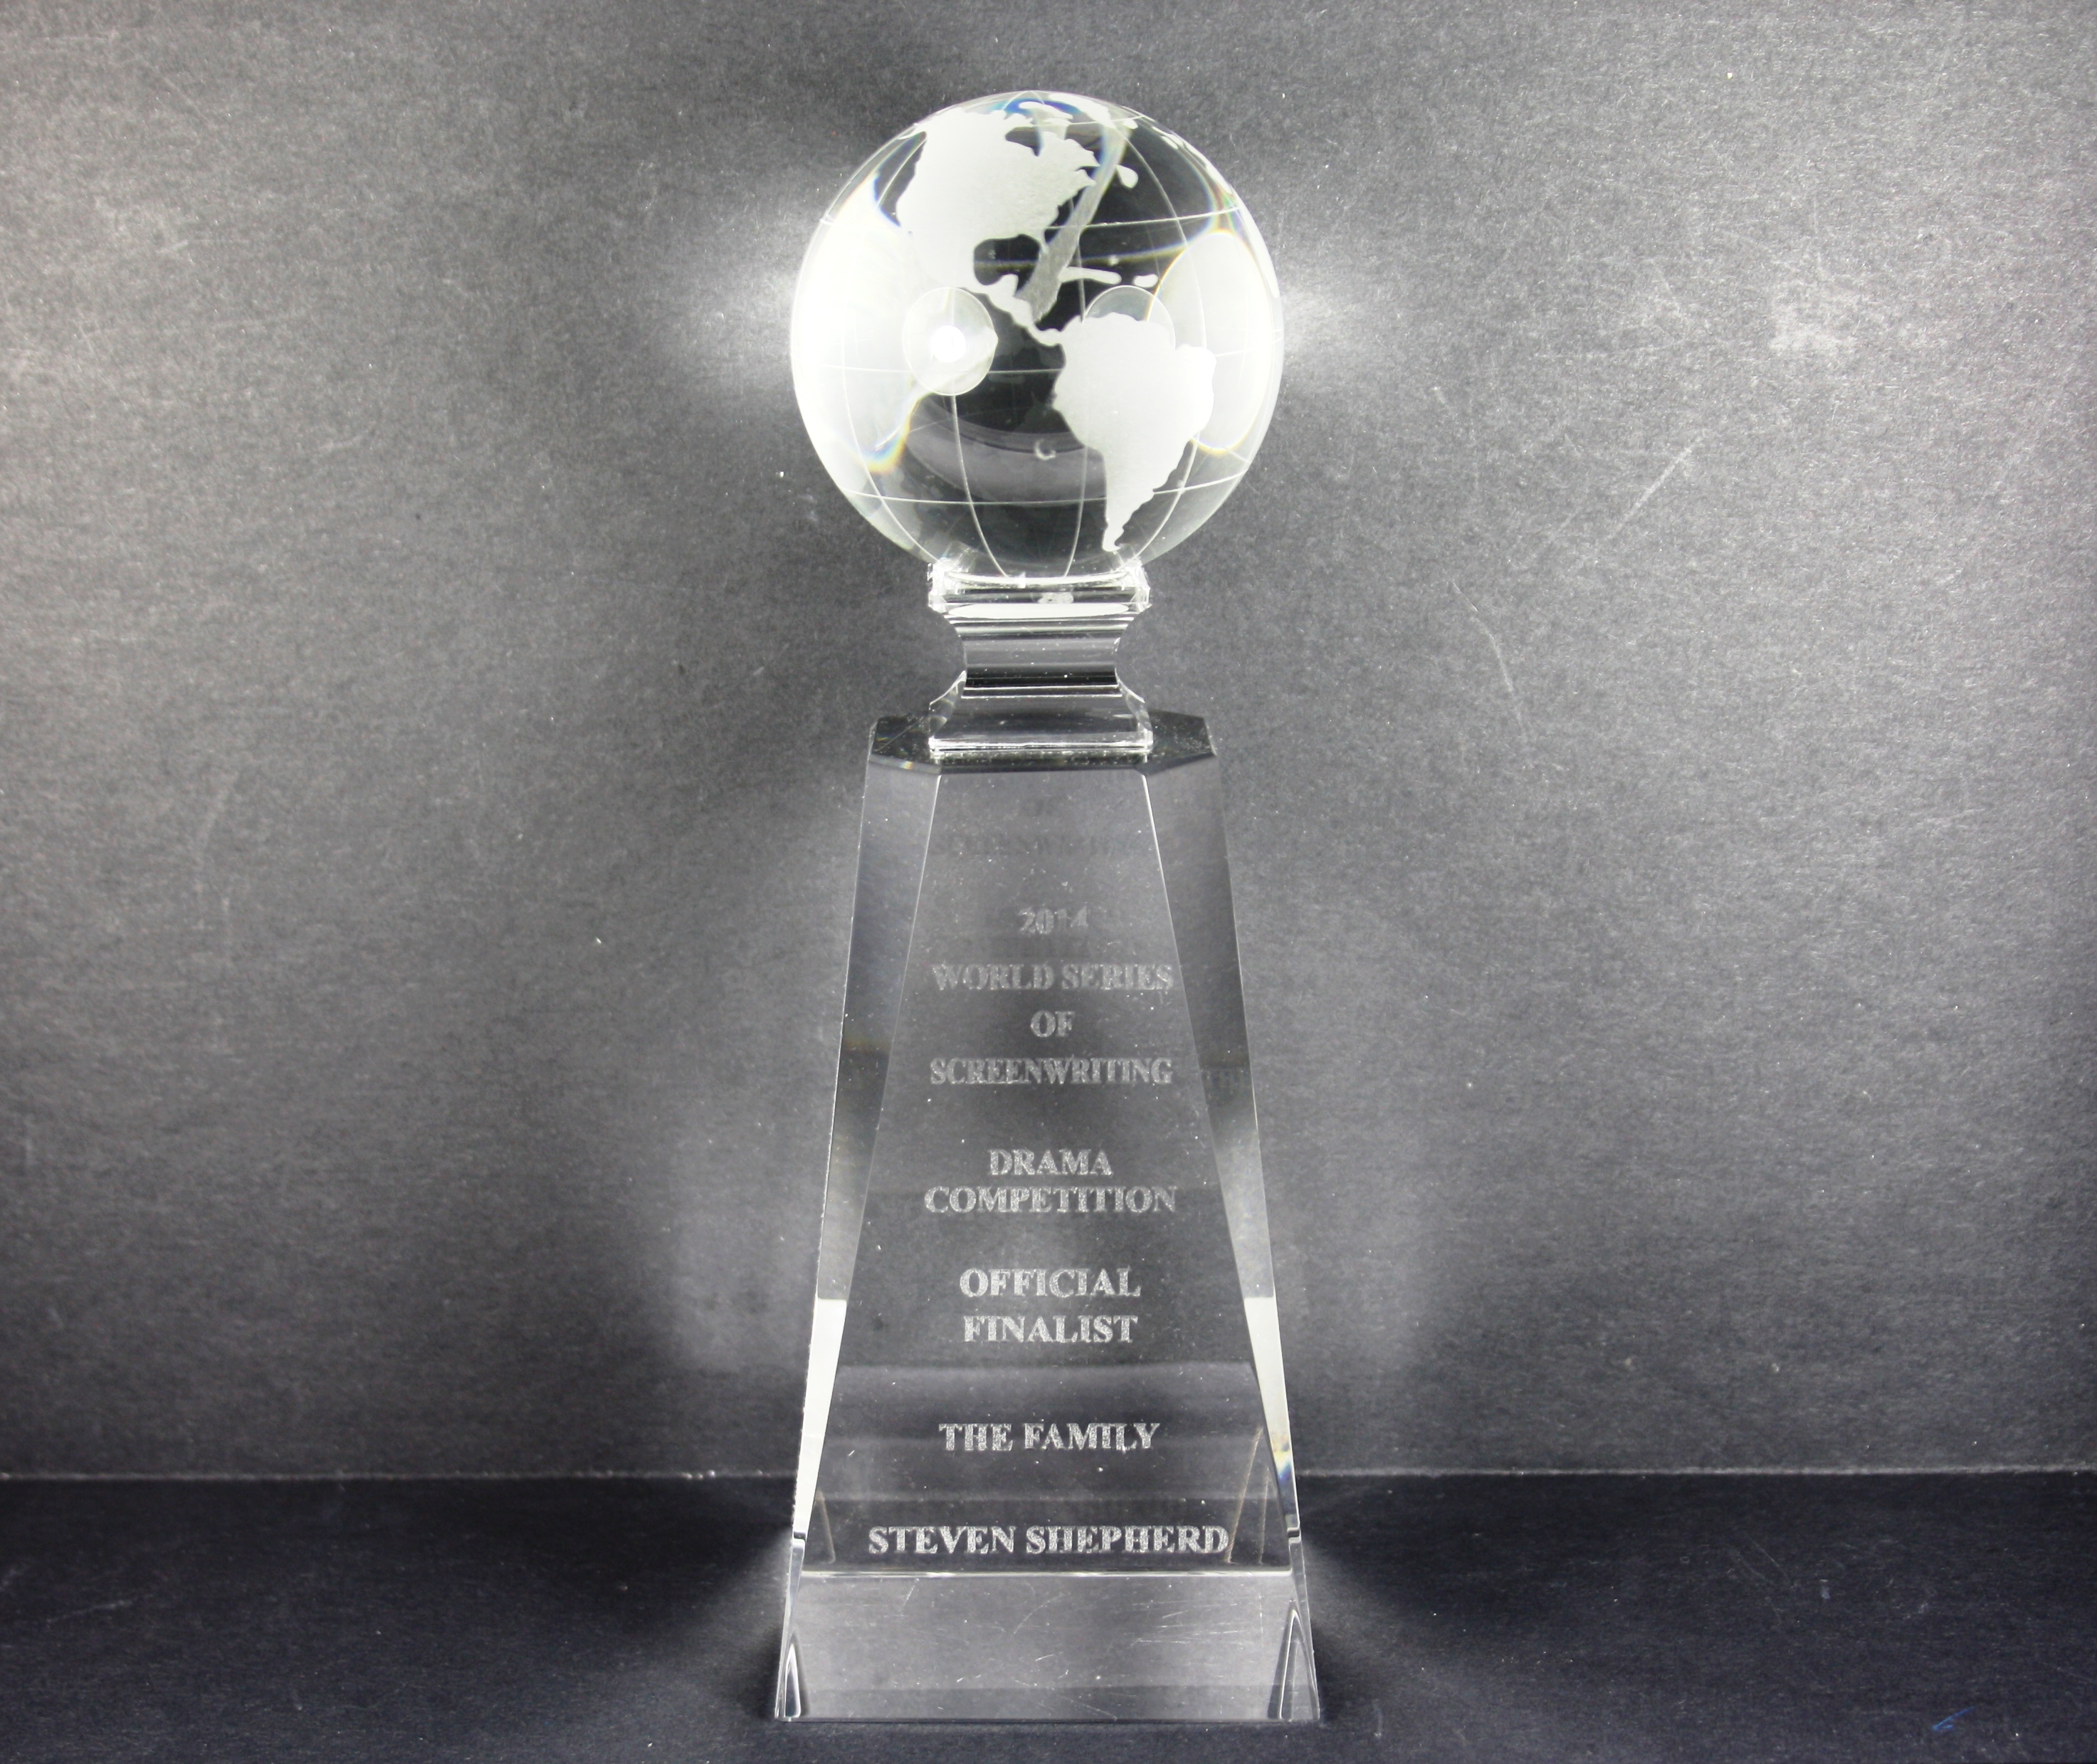 2014 World Series of Screenwriting Award, Hollywood USA